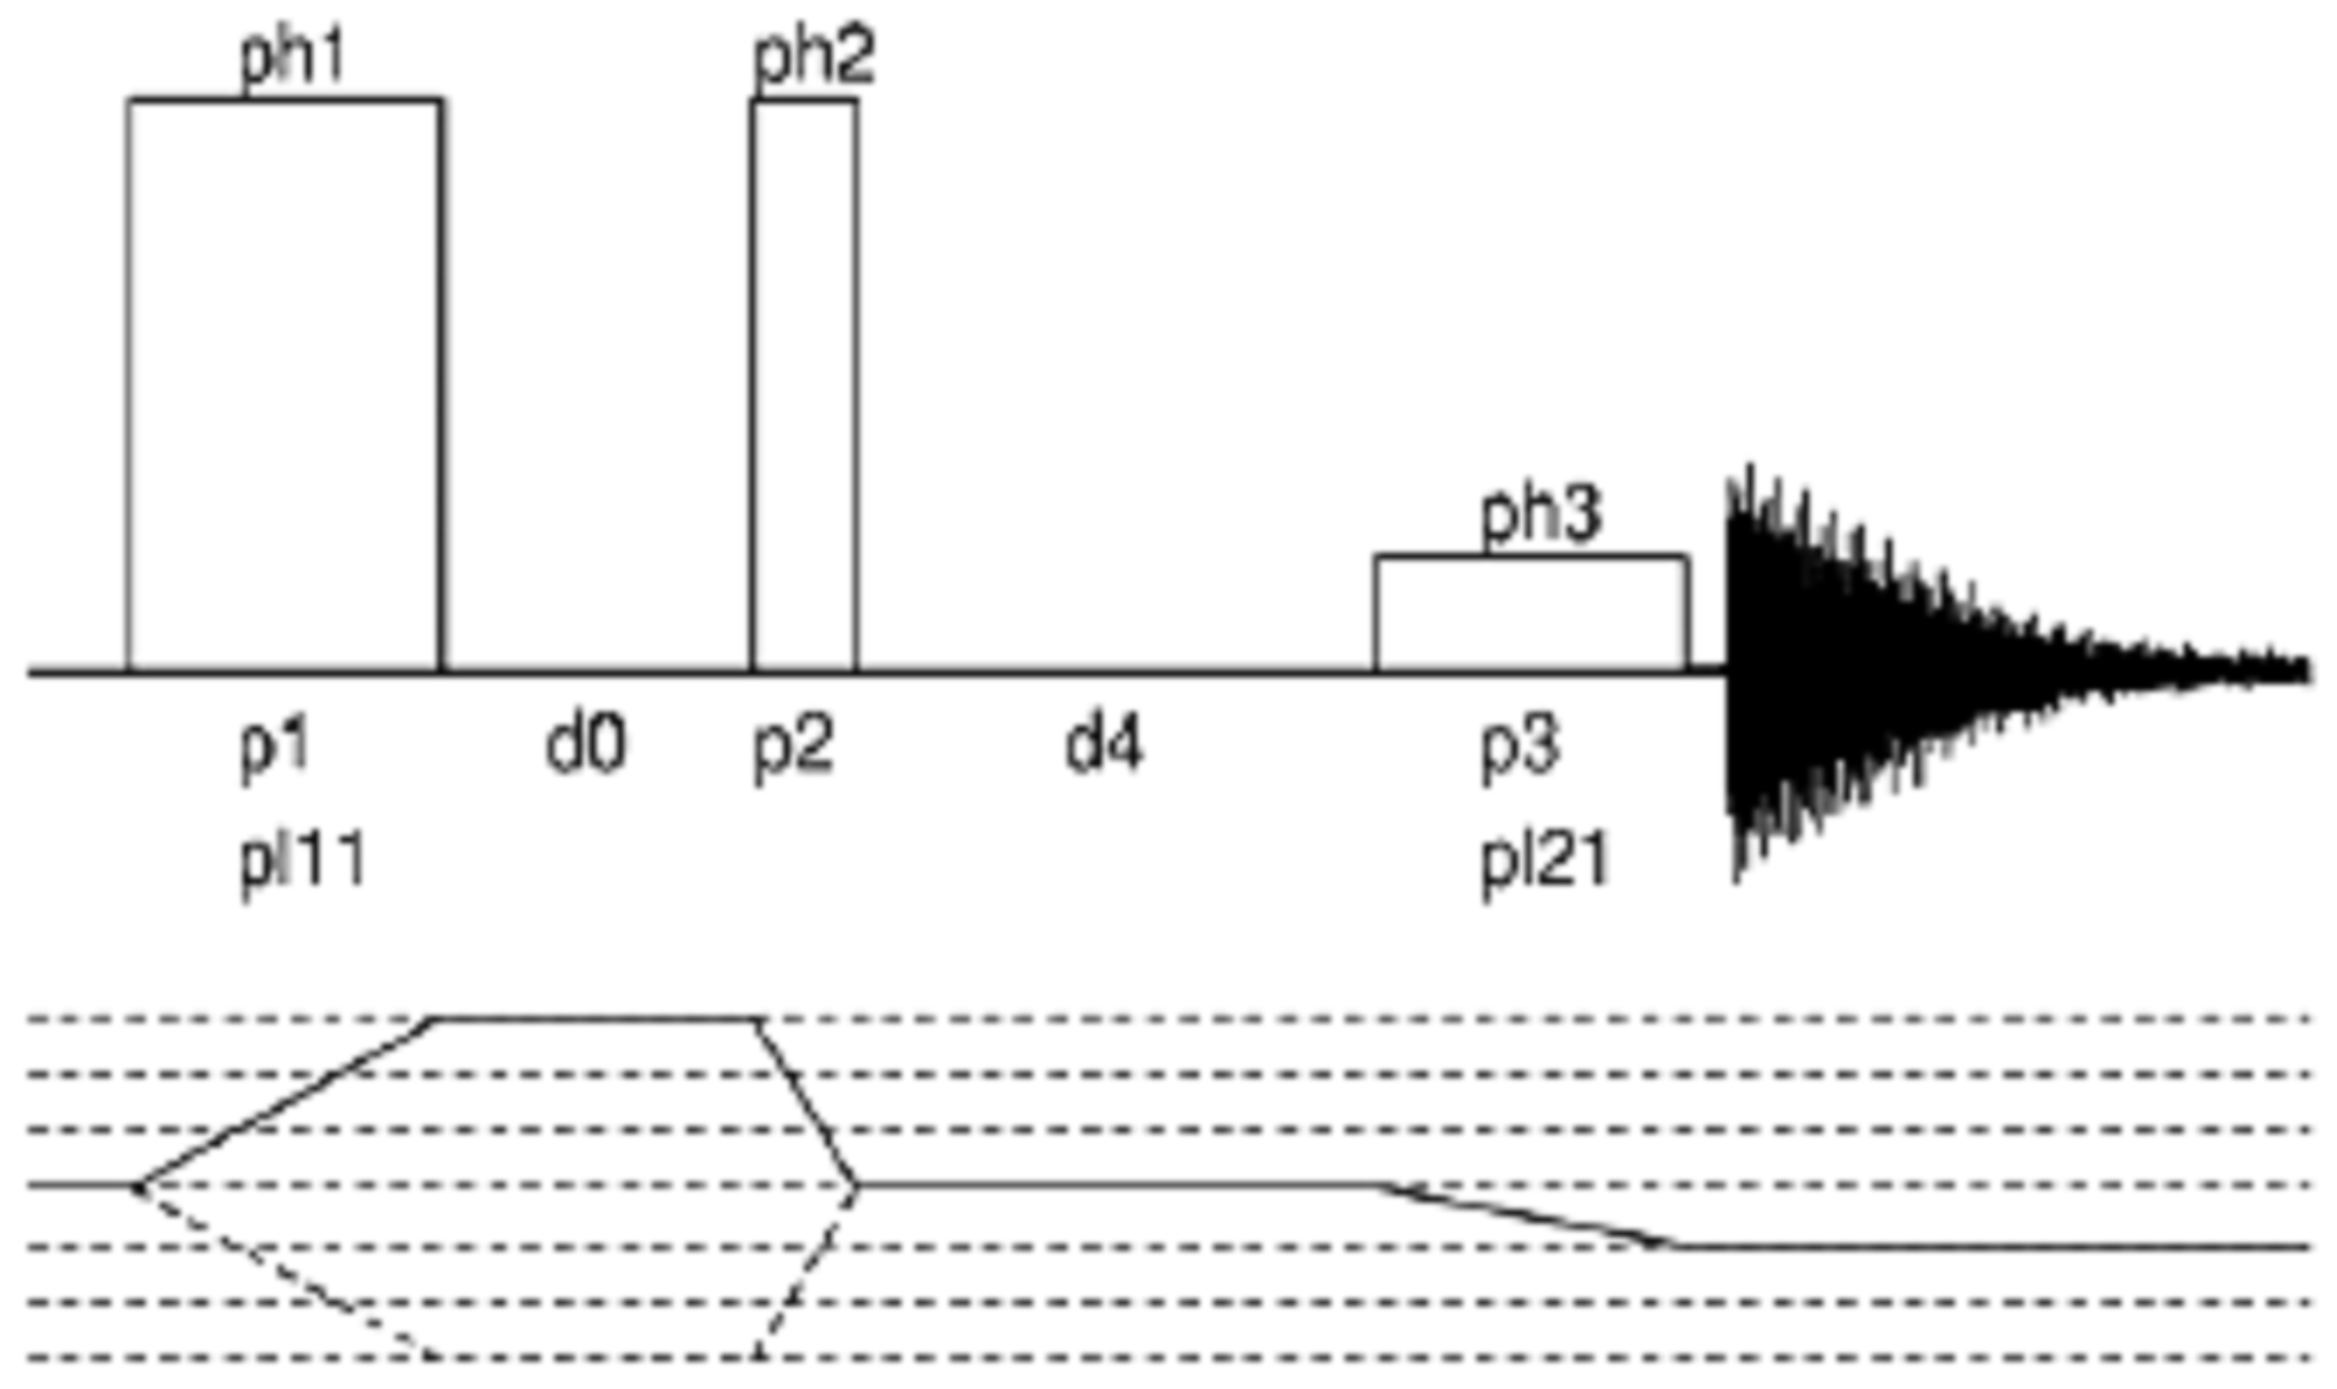 NS 1 d0 d1 d4 p1 p p3 pl11 pl1 1 μsec 5 sec 0 μsec 3,6 μsec 1, μsec 0 μsec 0 db 0 db 11. ábra A hárompulzusos 3QMAS kísérlet pulzusprogramjának sematikus ábrája és paramétereinek alapbeállításai.